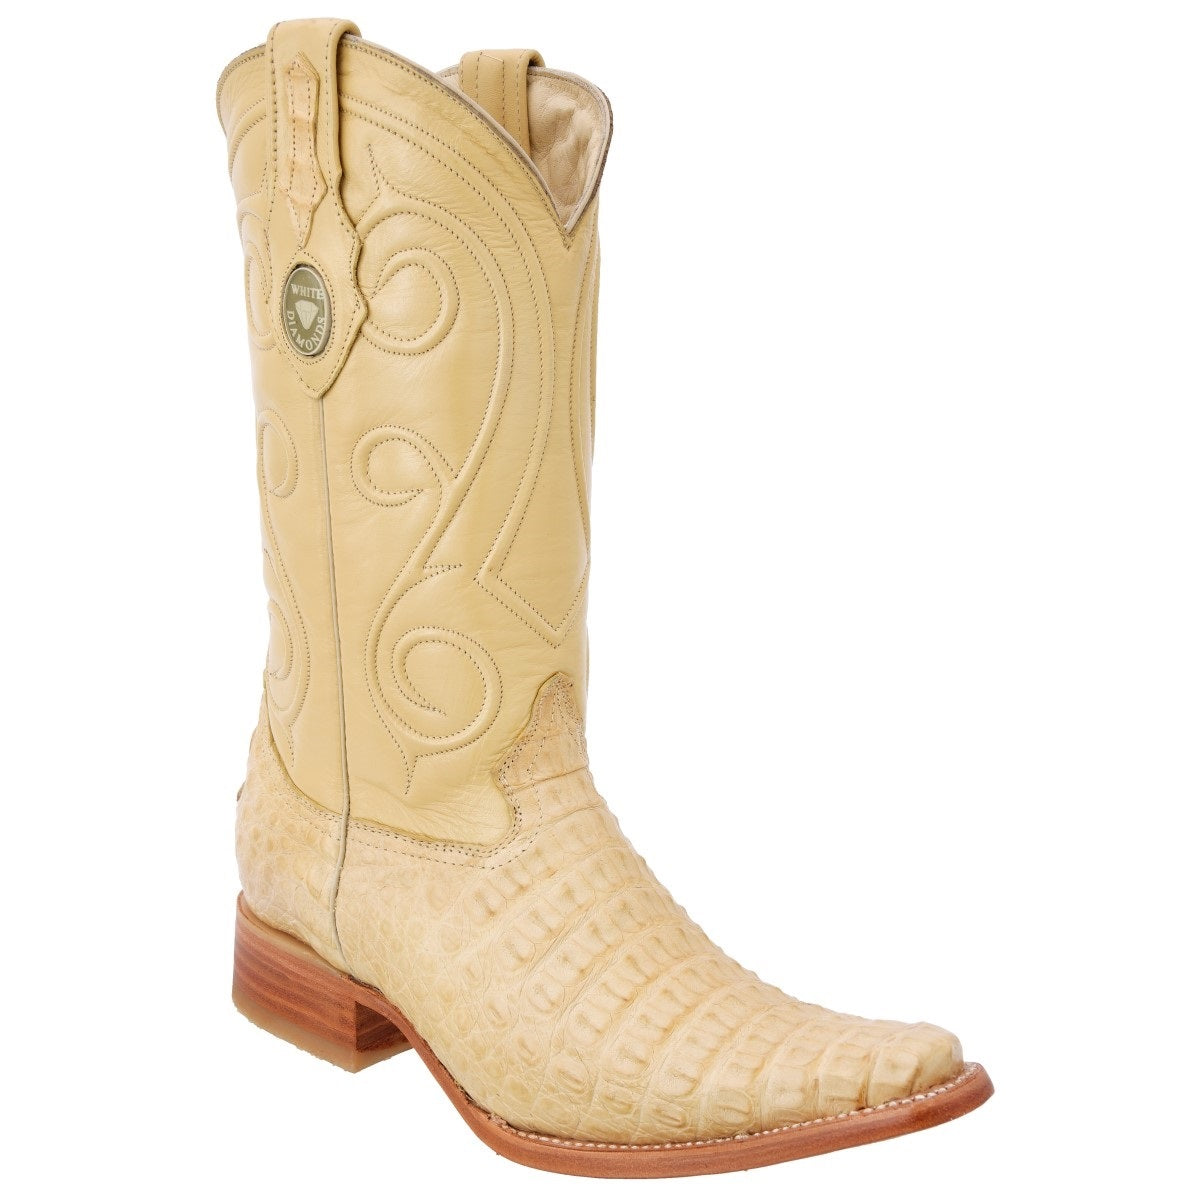 Botas Vaqueras TM-WD0176 - Western Boots